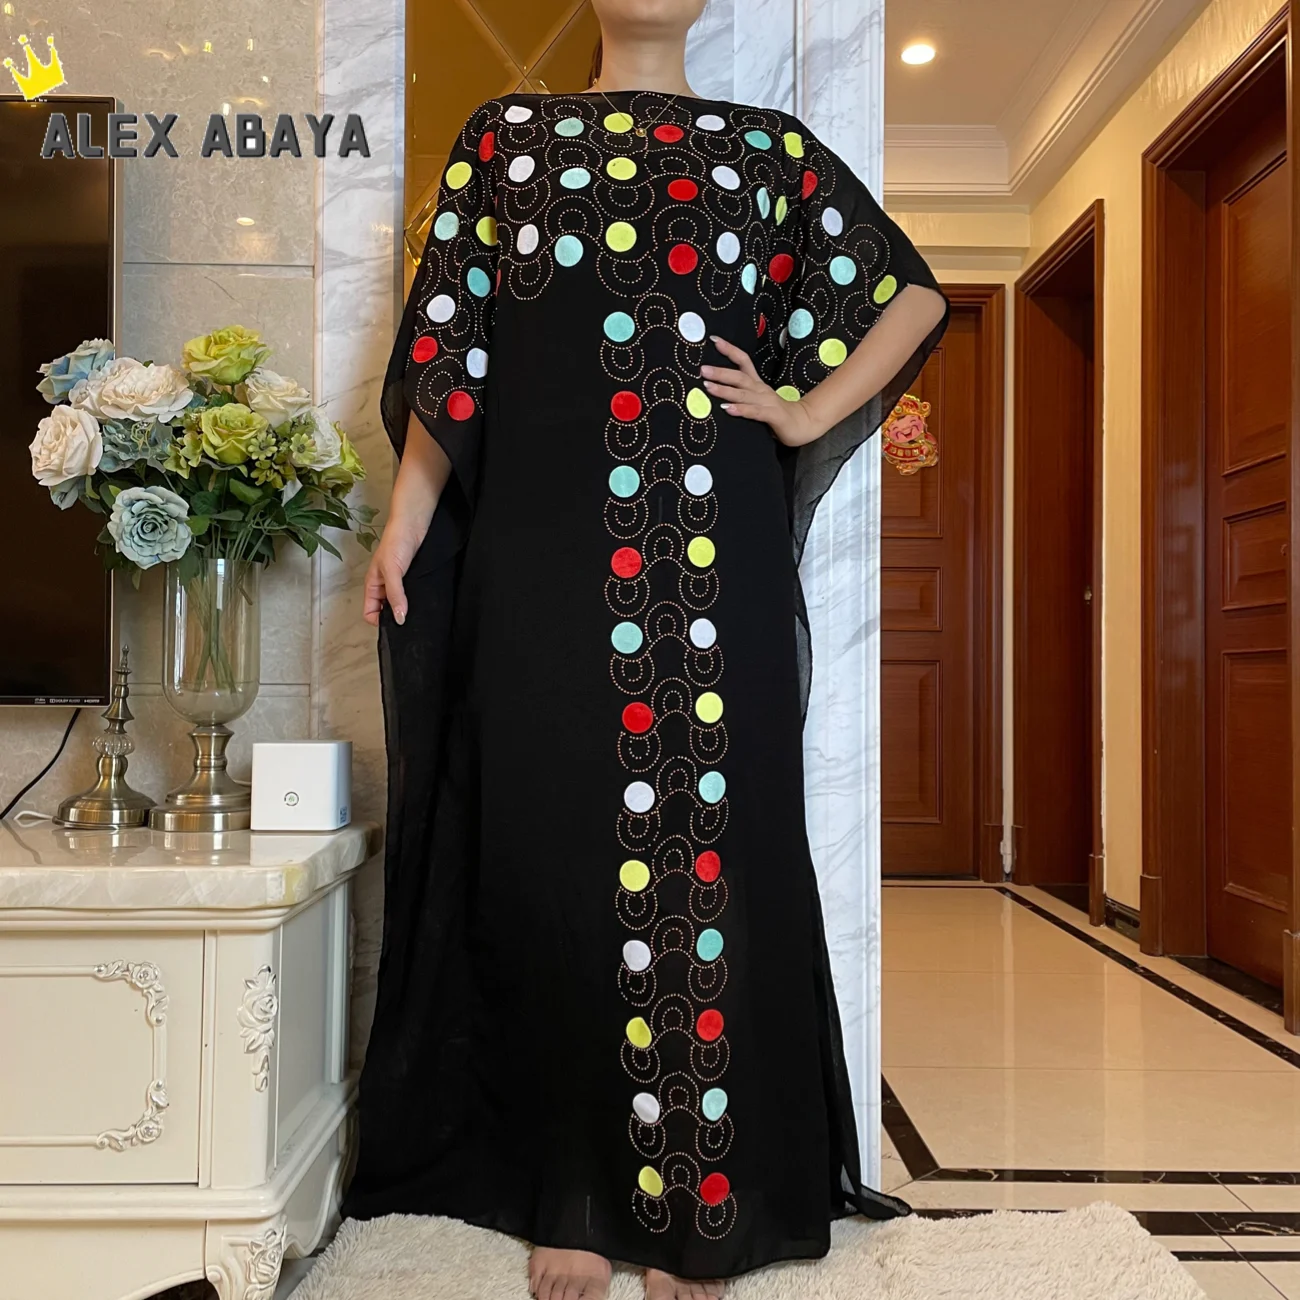 Новинка 2021 г., мусульманское платье Abaya из Дубая, индейки, модное платье Caftan, вечерние нее платье с бусинами и стразами в африканском стиле ...